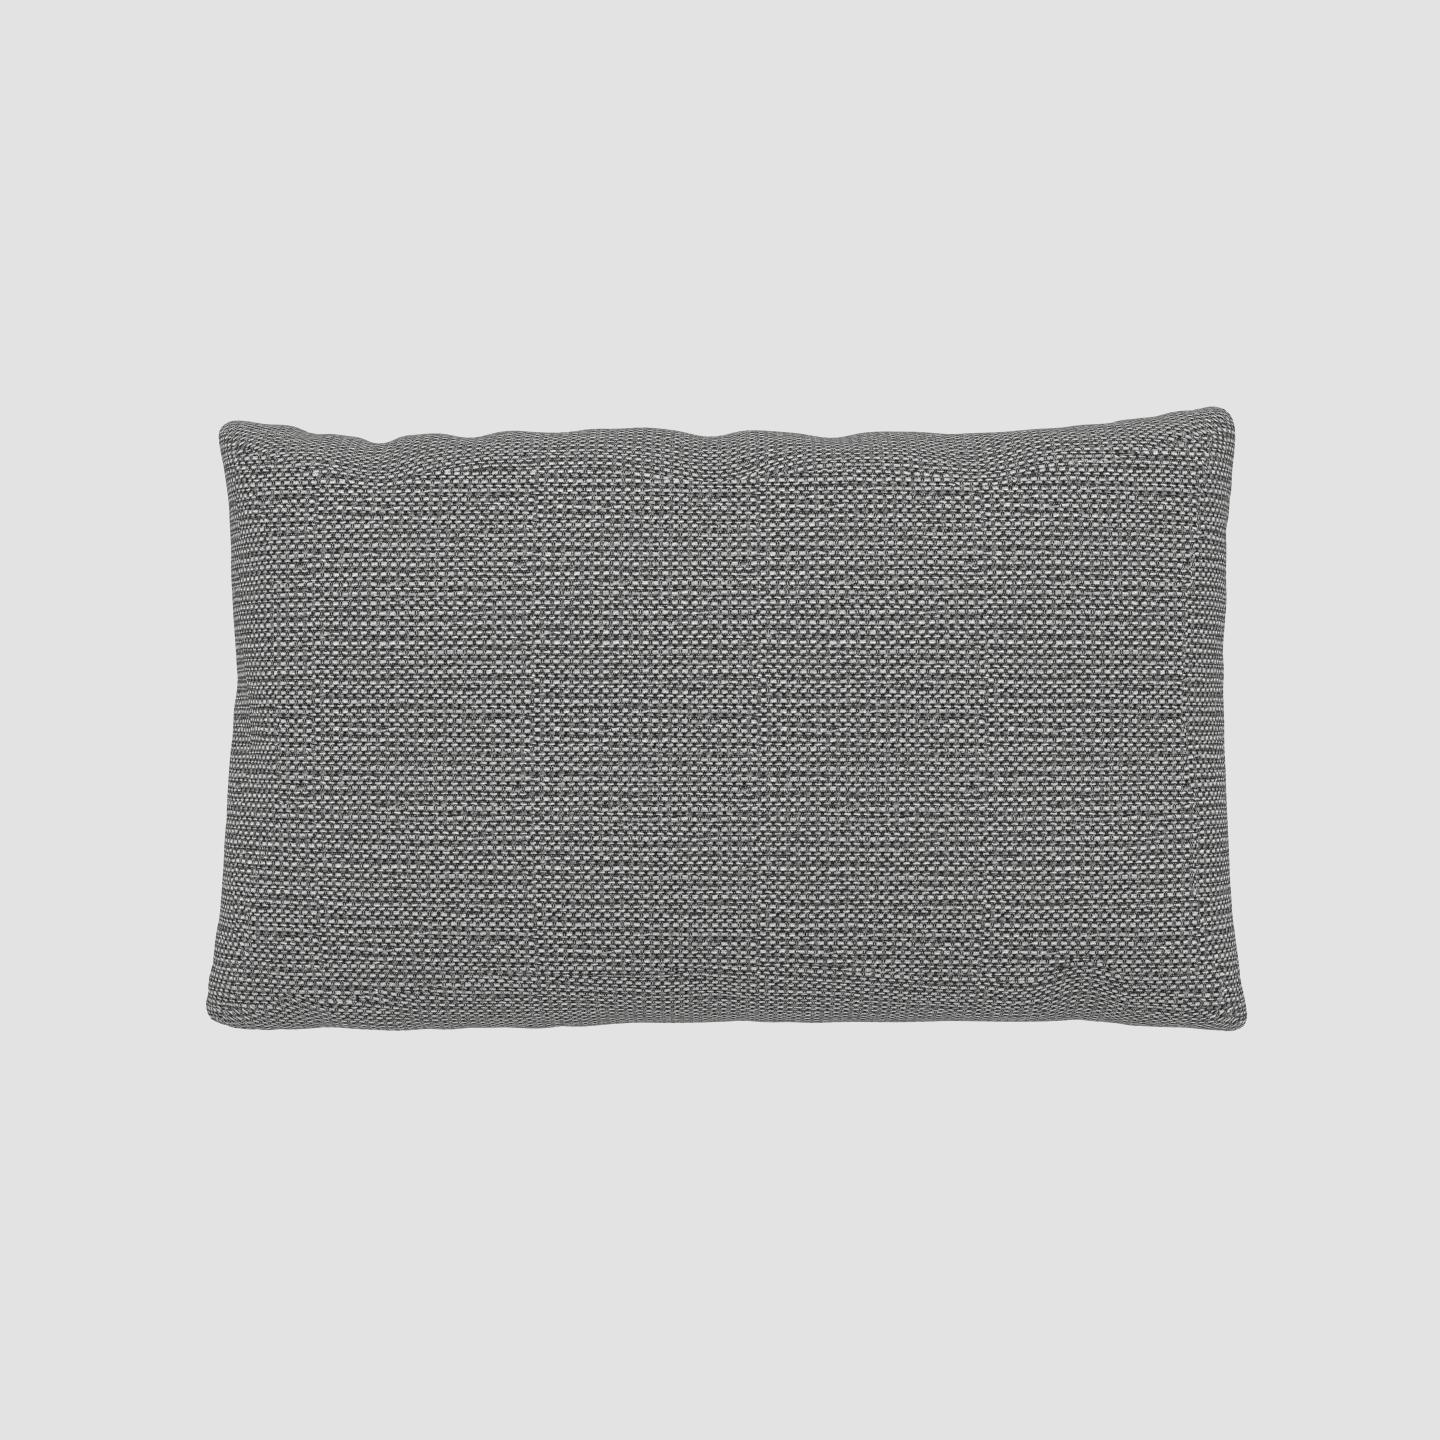 MYCS Coussin Blanc Granite - 30x50 cm - Housse en Tissu grossier. Coussin de canapé moelleux